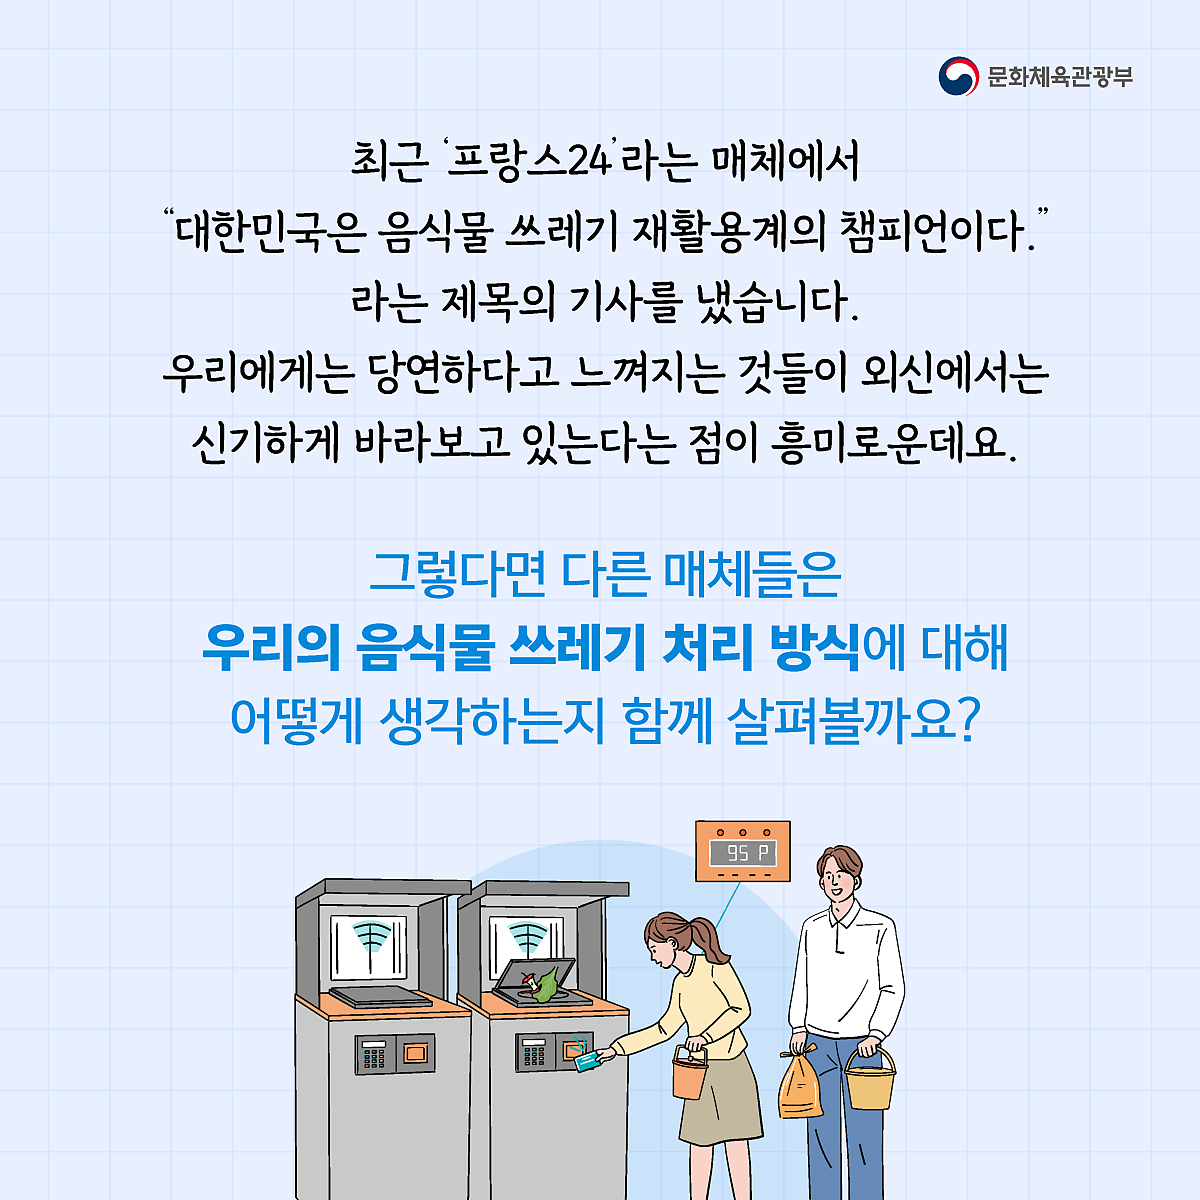 문체부_해외뉴스분석팀_카드뉴스_6회차_페이지_2.png